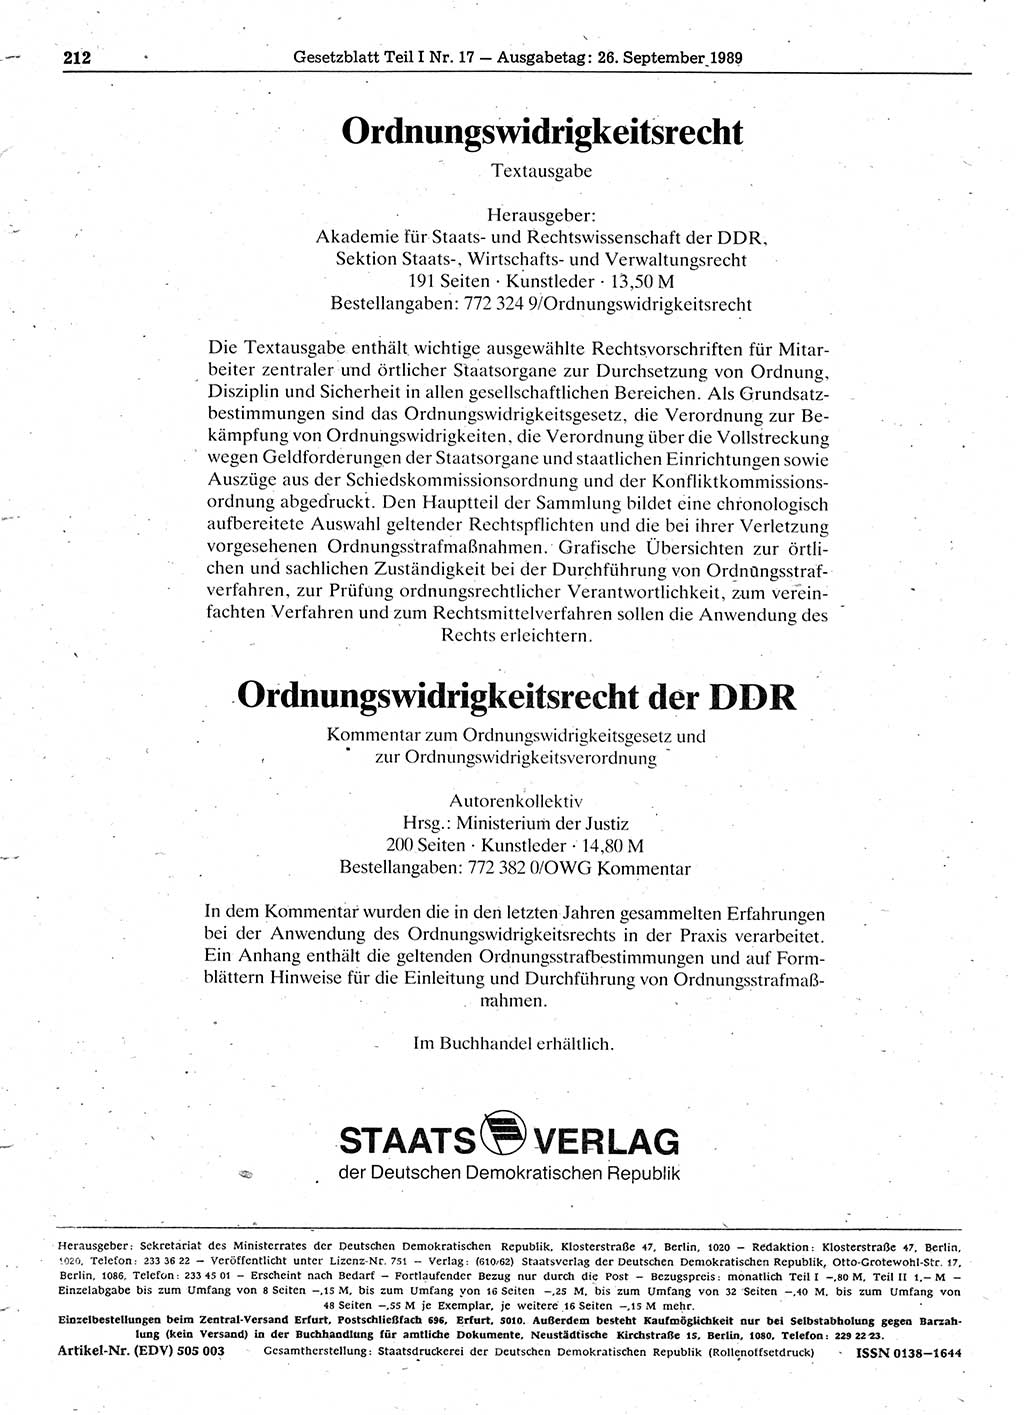 Gesetzblatt (GBl.) der Deutschen Demokratischen Republik (DDR) Teil Ⅰ 1989, Seite 212 (GBl. DDR Ⅰ 1989, S. 212)